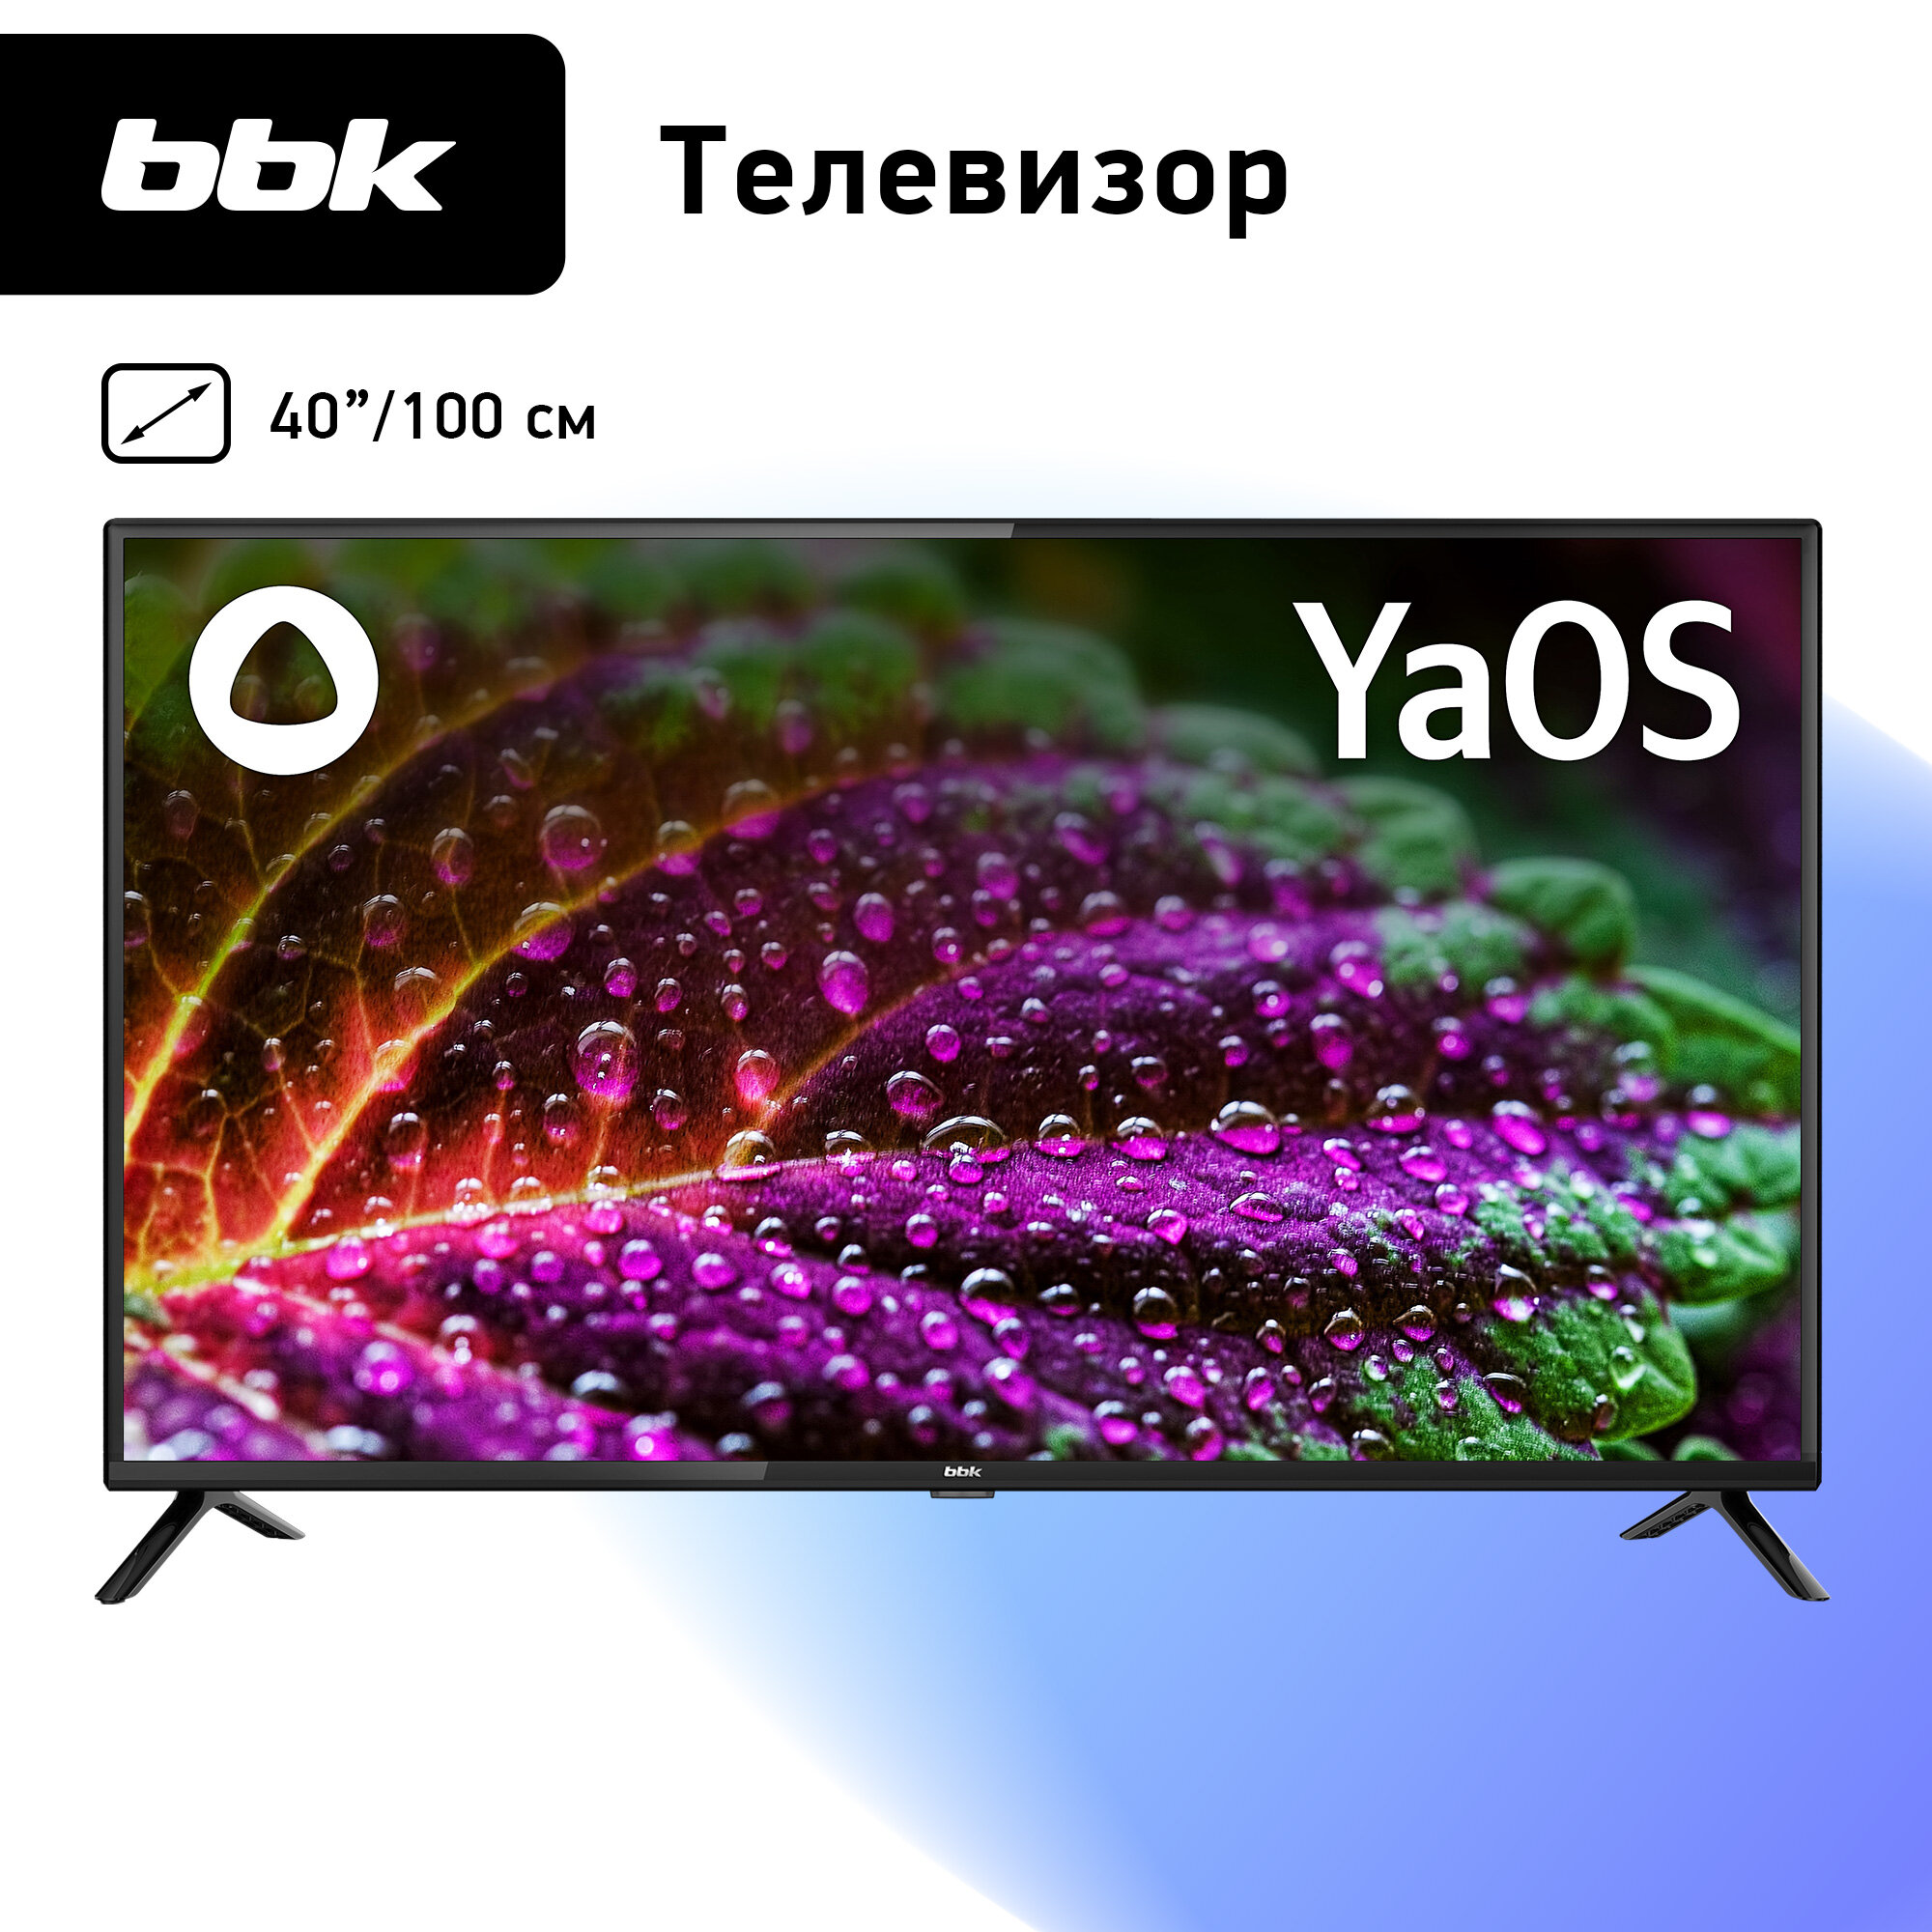 LED телевизор BBK 40LEX-9201/FTS2C черный 40" Full HD YaOS